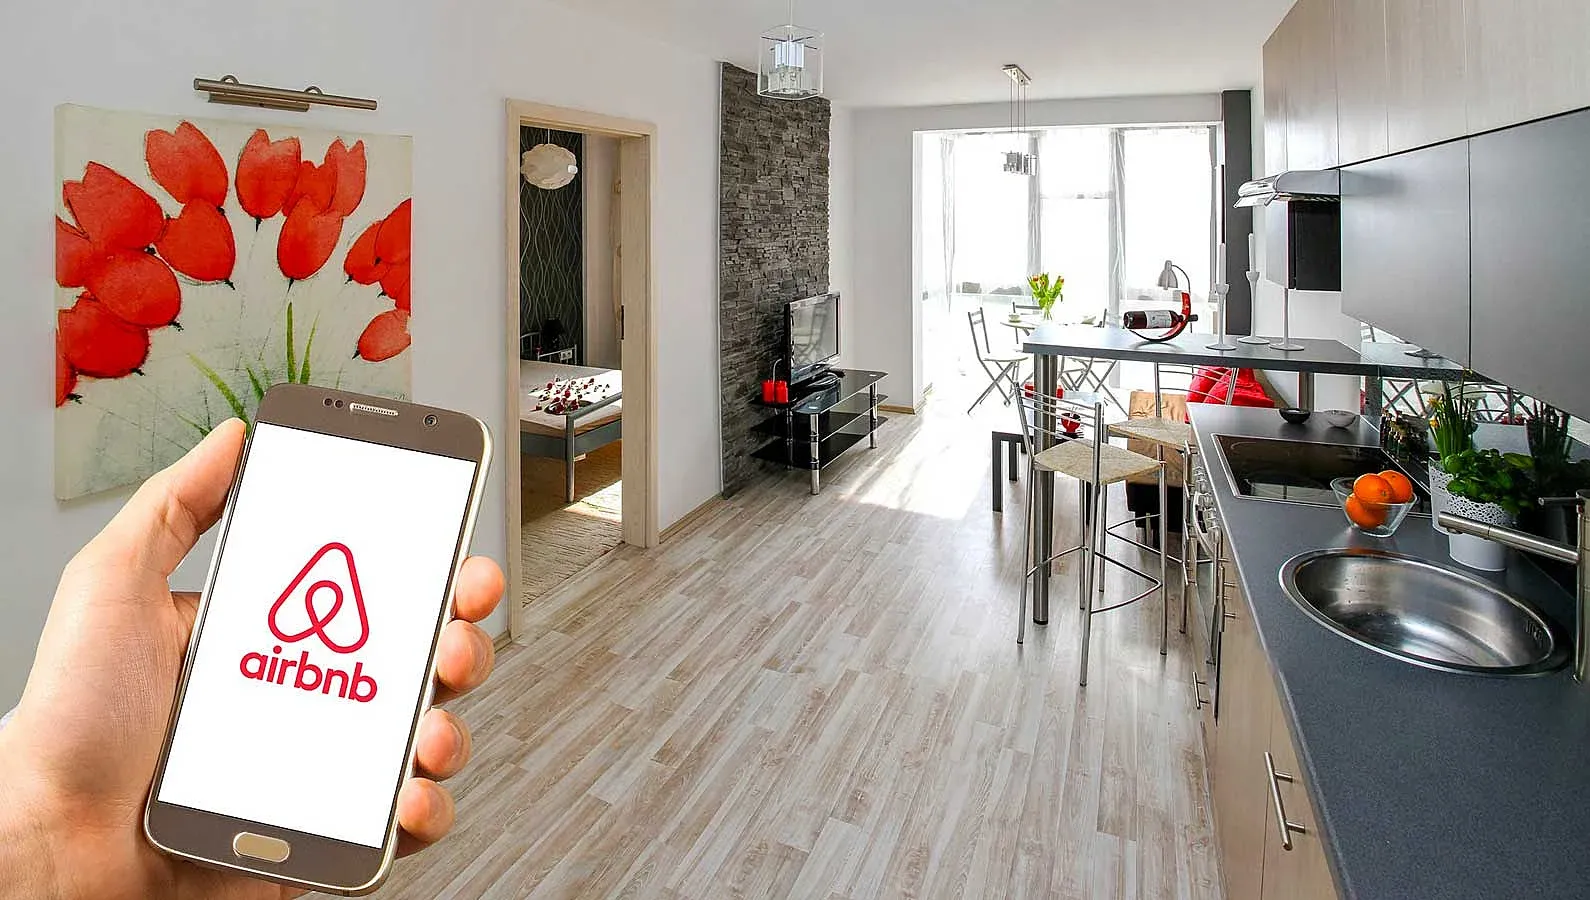 Airbnb chuẩn bị áp dụng thanh toán bằng tiền mã hóa